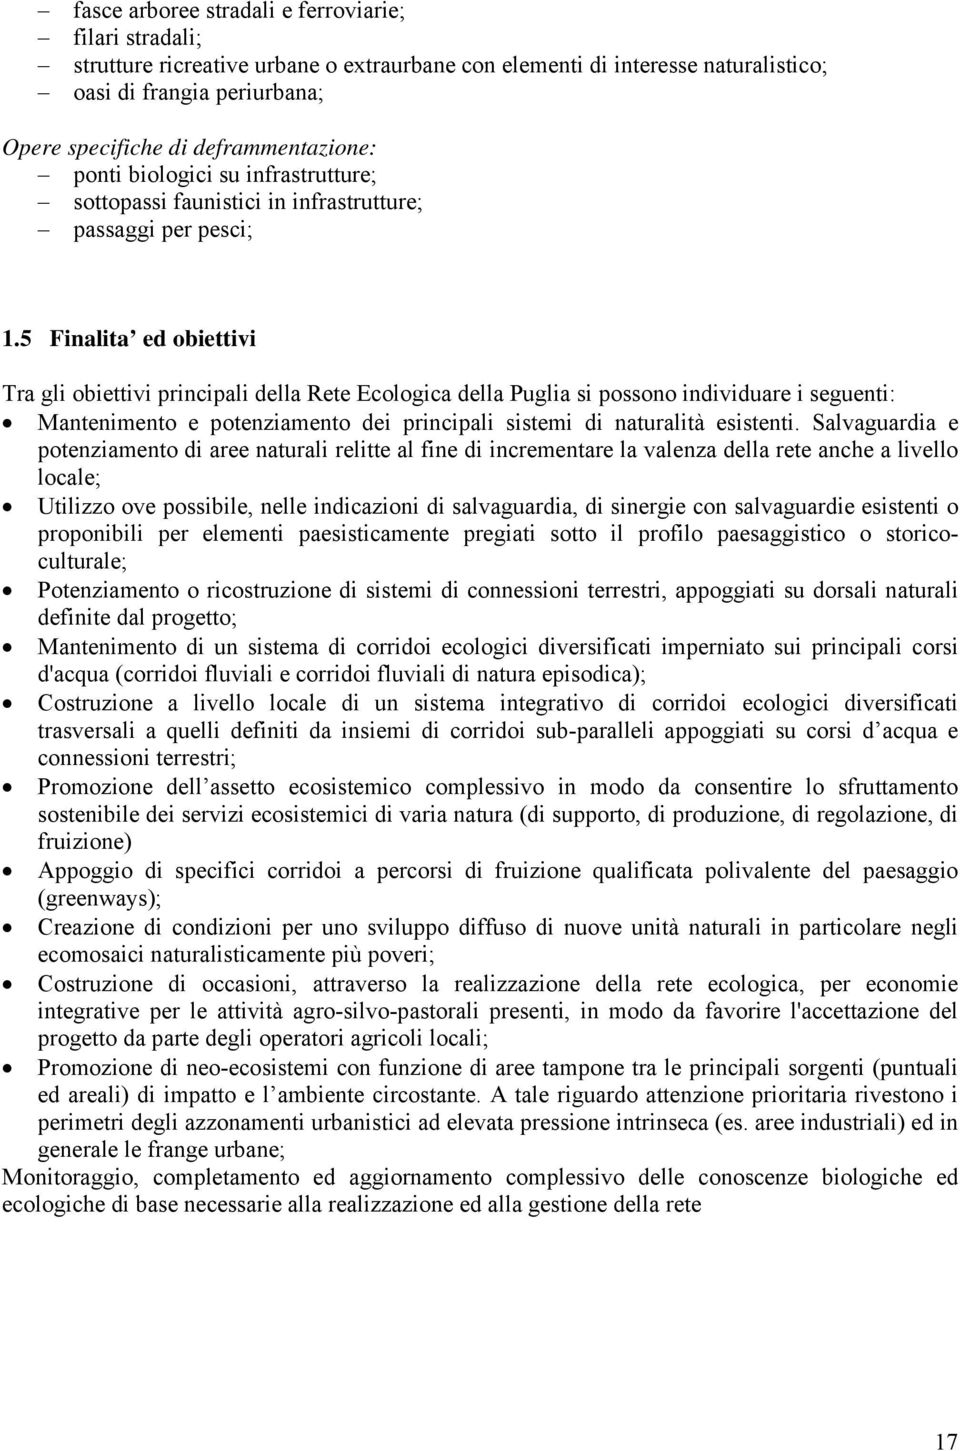 5 Finalita ed obiettivi Tra gli obiettivi principali della Rete Ecologica della Puglia si possono individuare i seguenti: Mantenimento e potenziamento dei principali sistemi di naturalità esistenti.